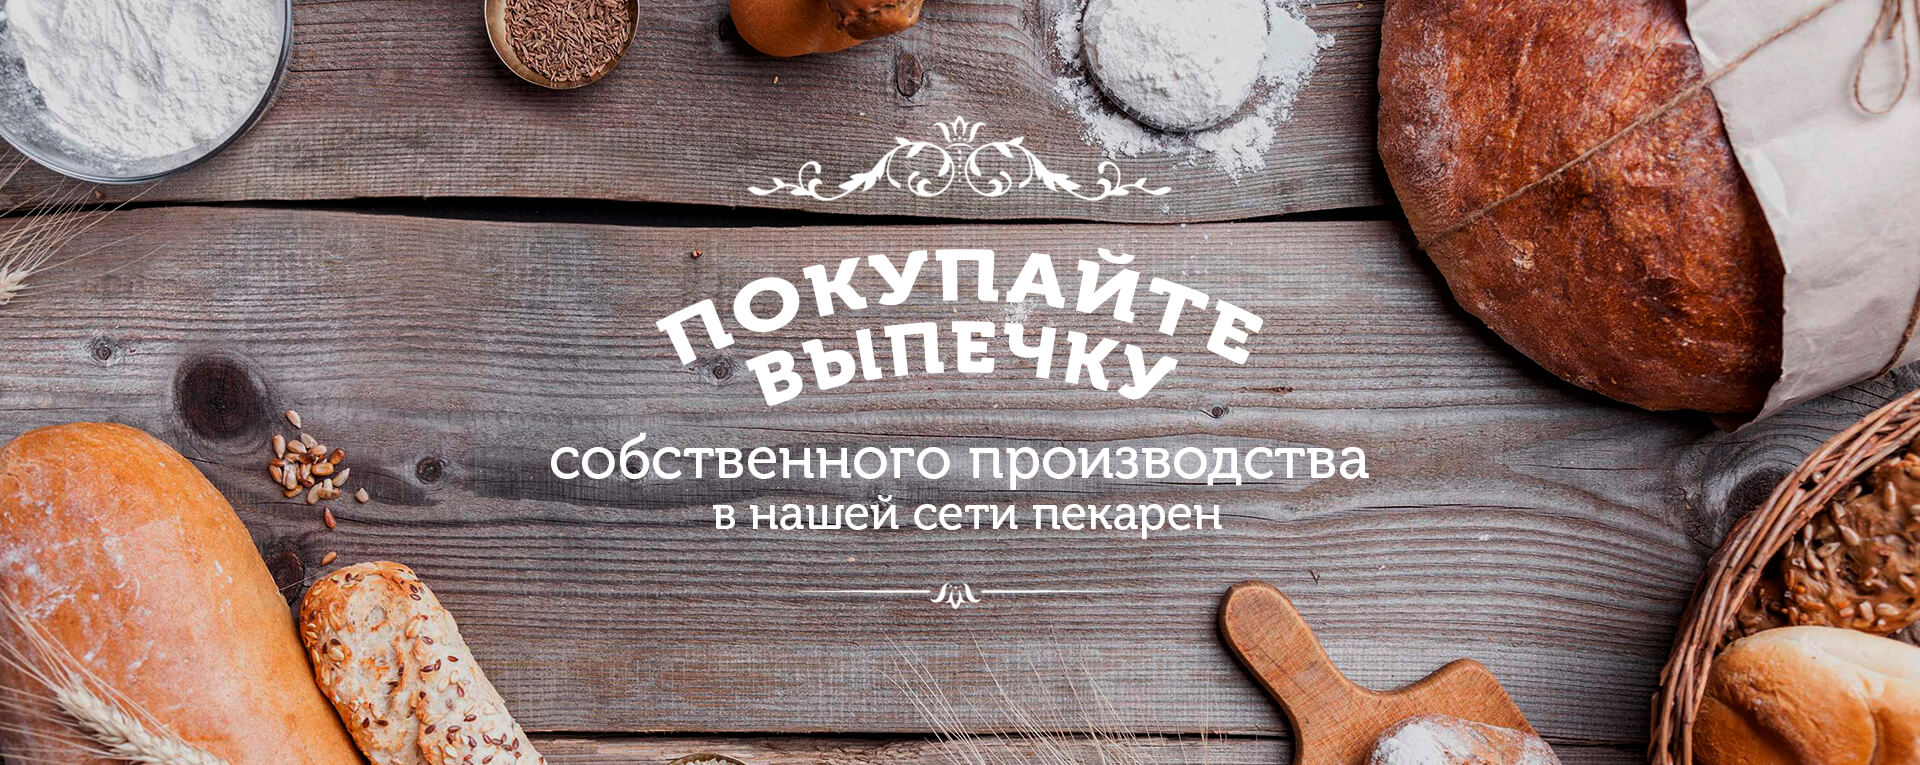 Доставка пиццы по г. Чебоксары и Новочебоксарск